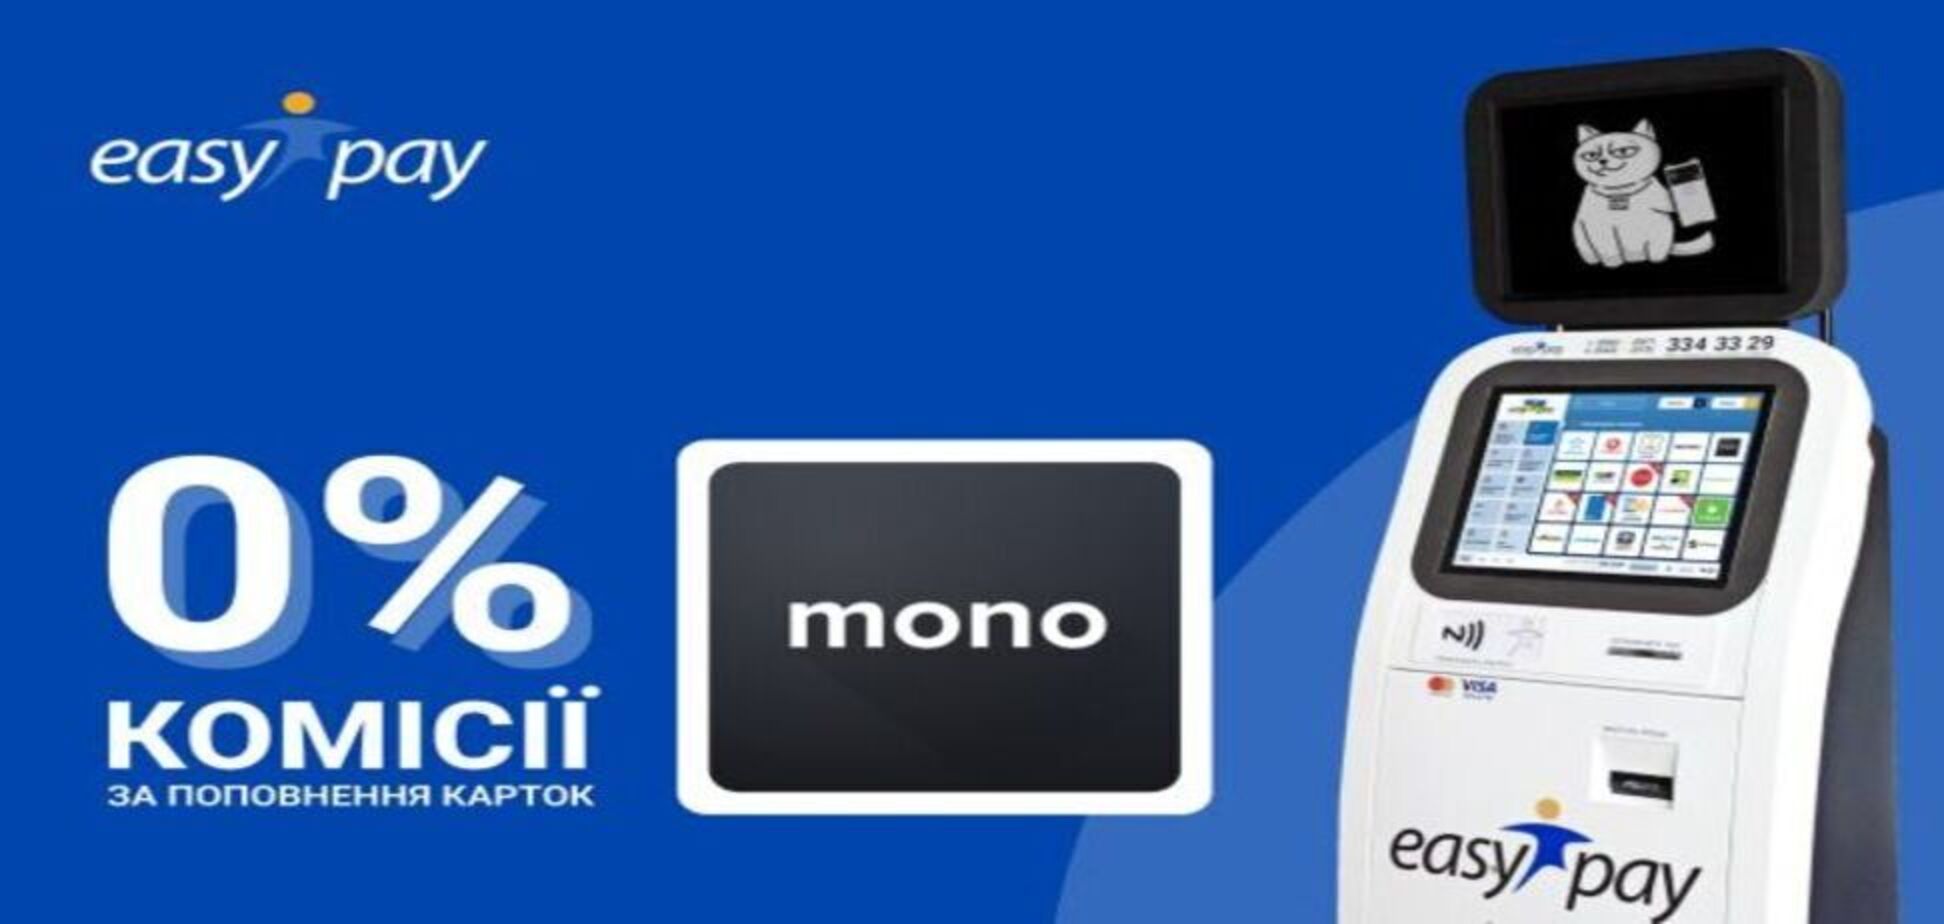 Картку Monobank можна поповнити без комісії в EasyPay – найбільшій мережі терміналів в Україні